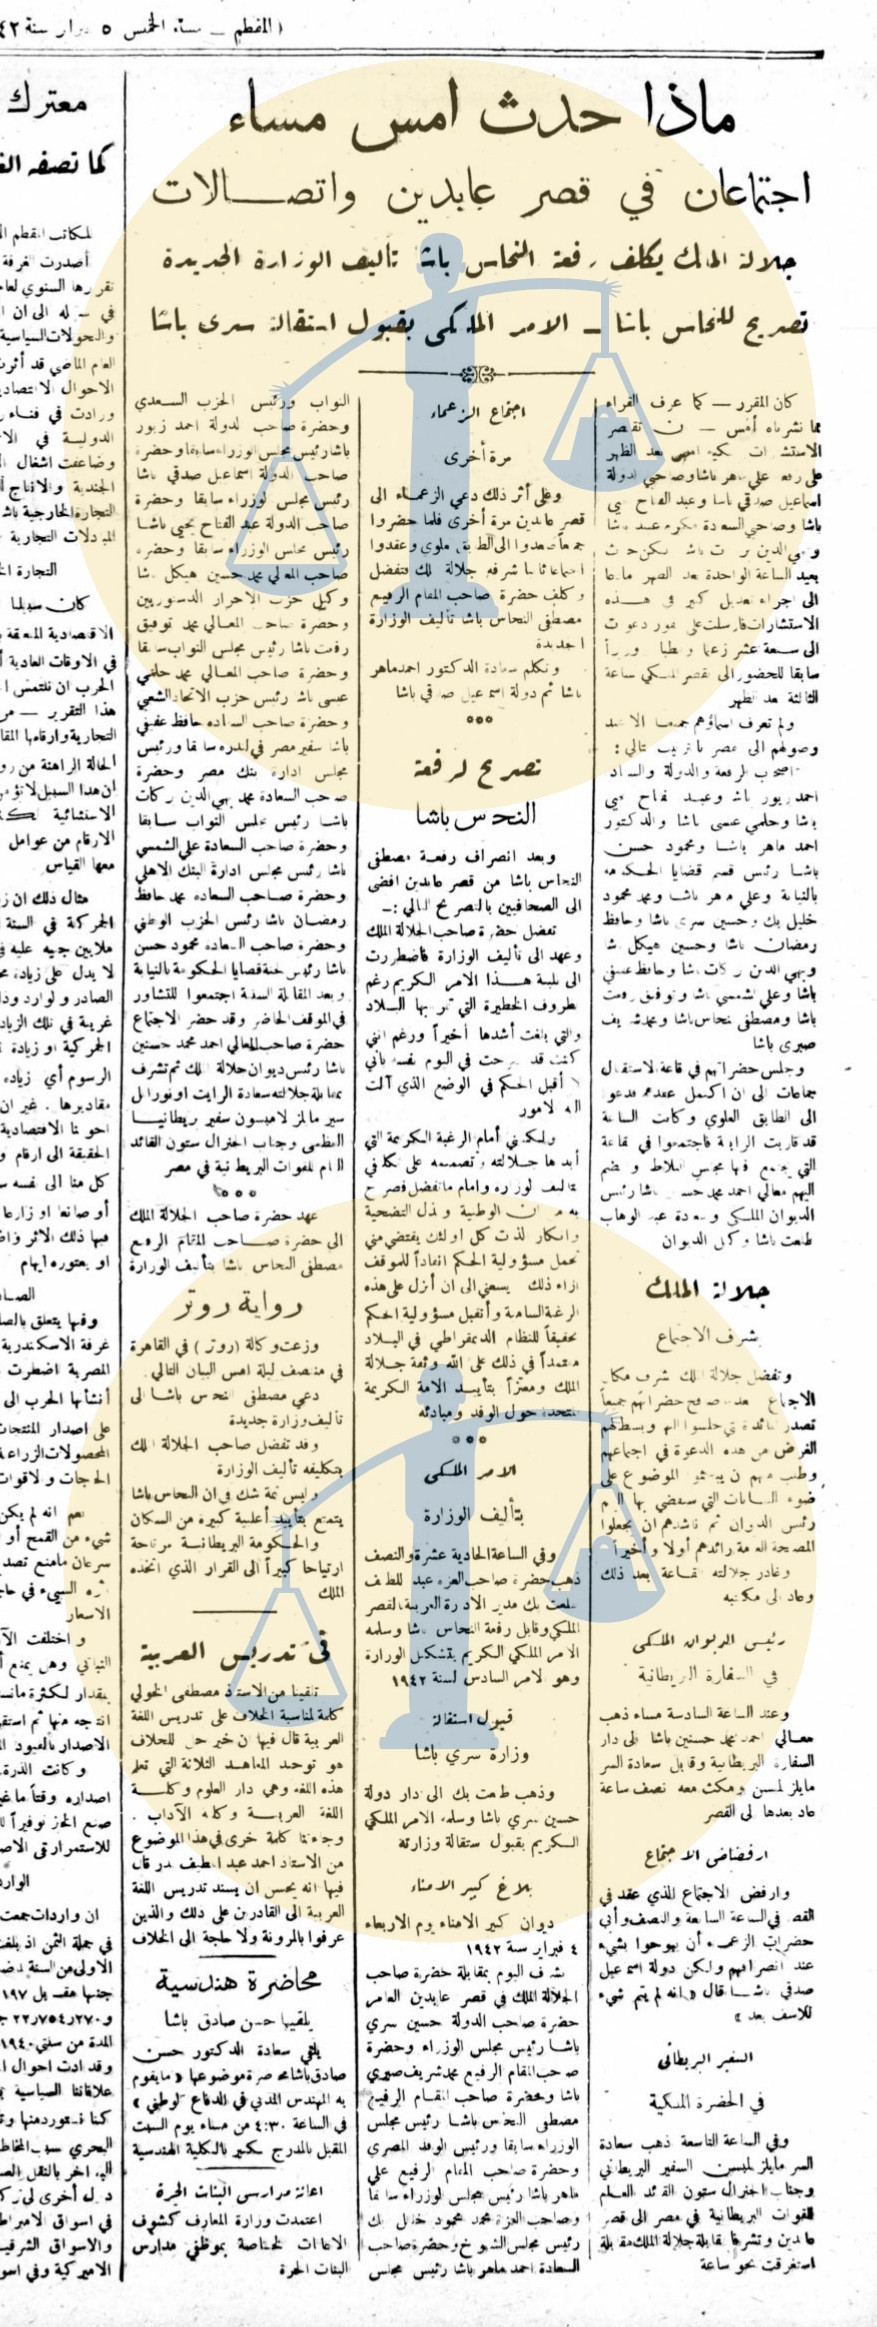 خبر جريدة المقطم عن حادث 4 فبراير في اليوم التالي